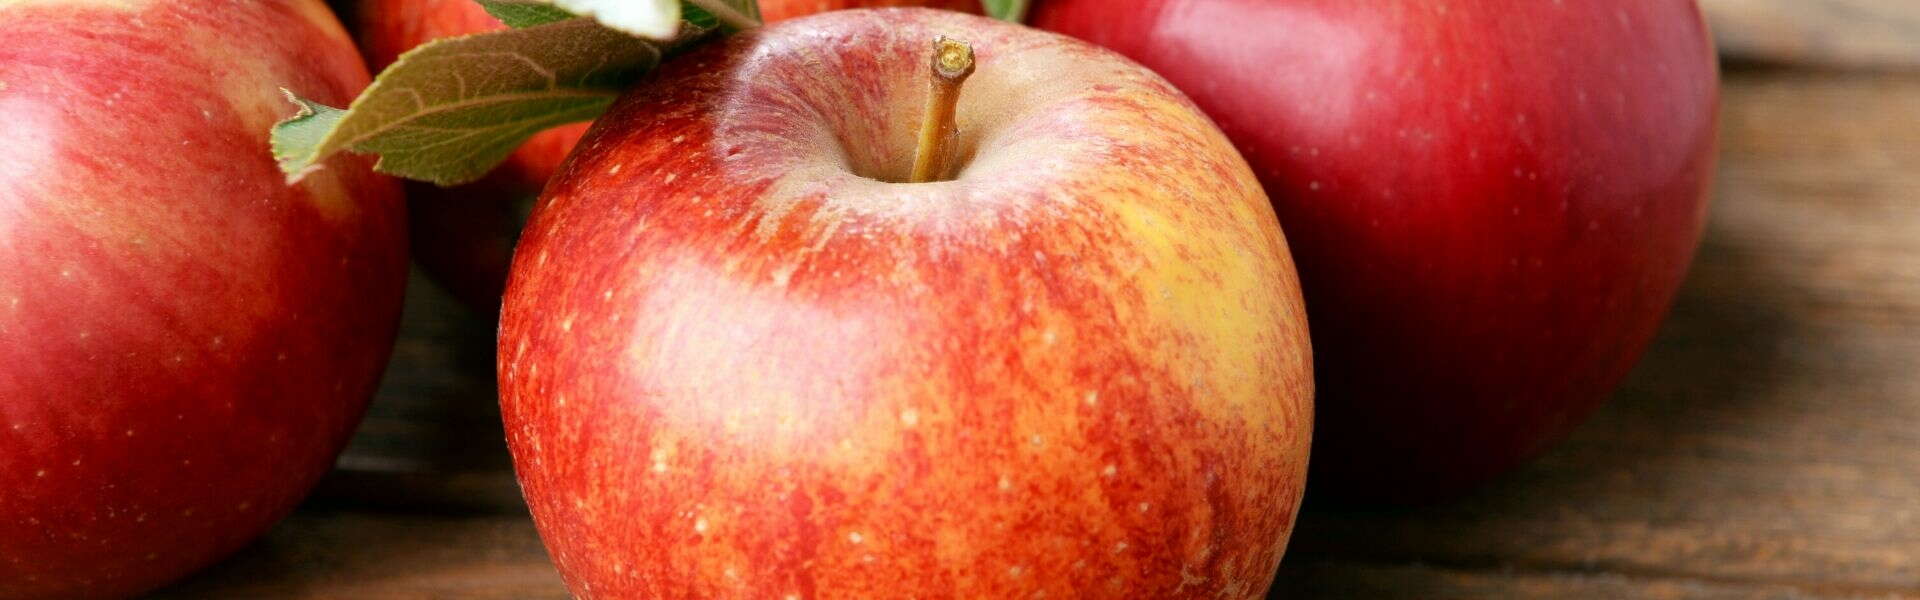 Mela annurca | Proprietà e benefici della regina delle mele